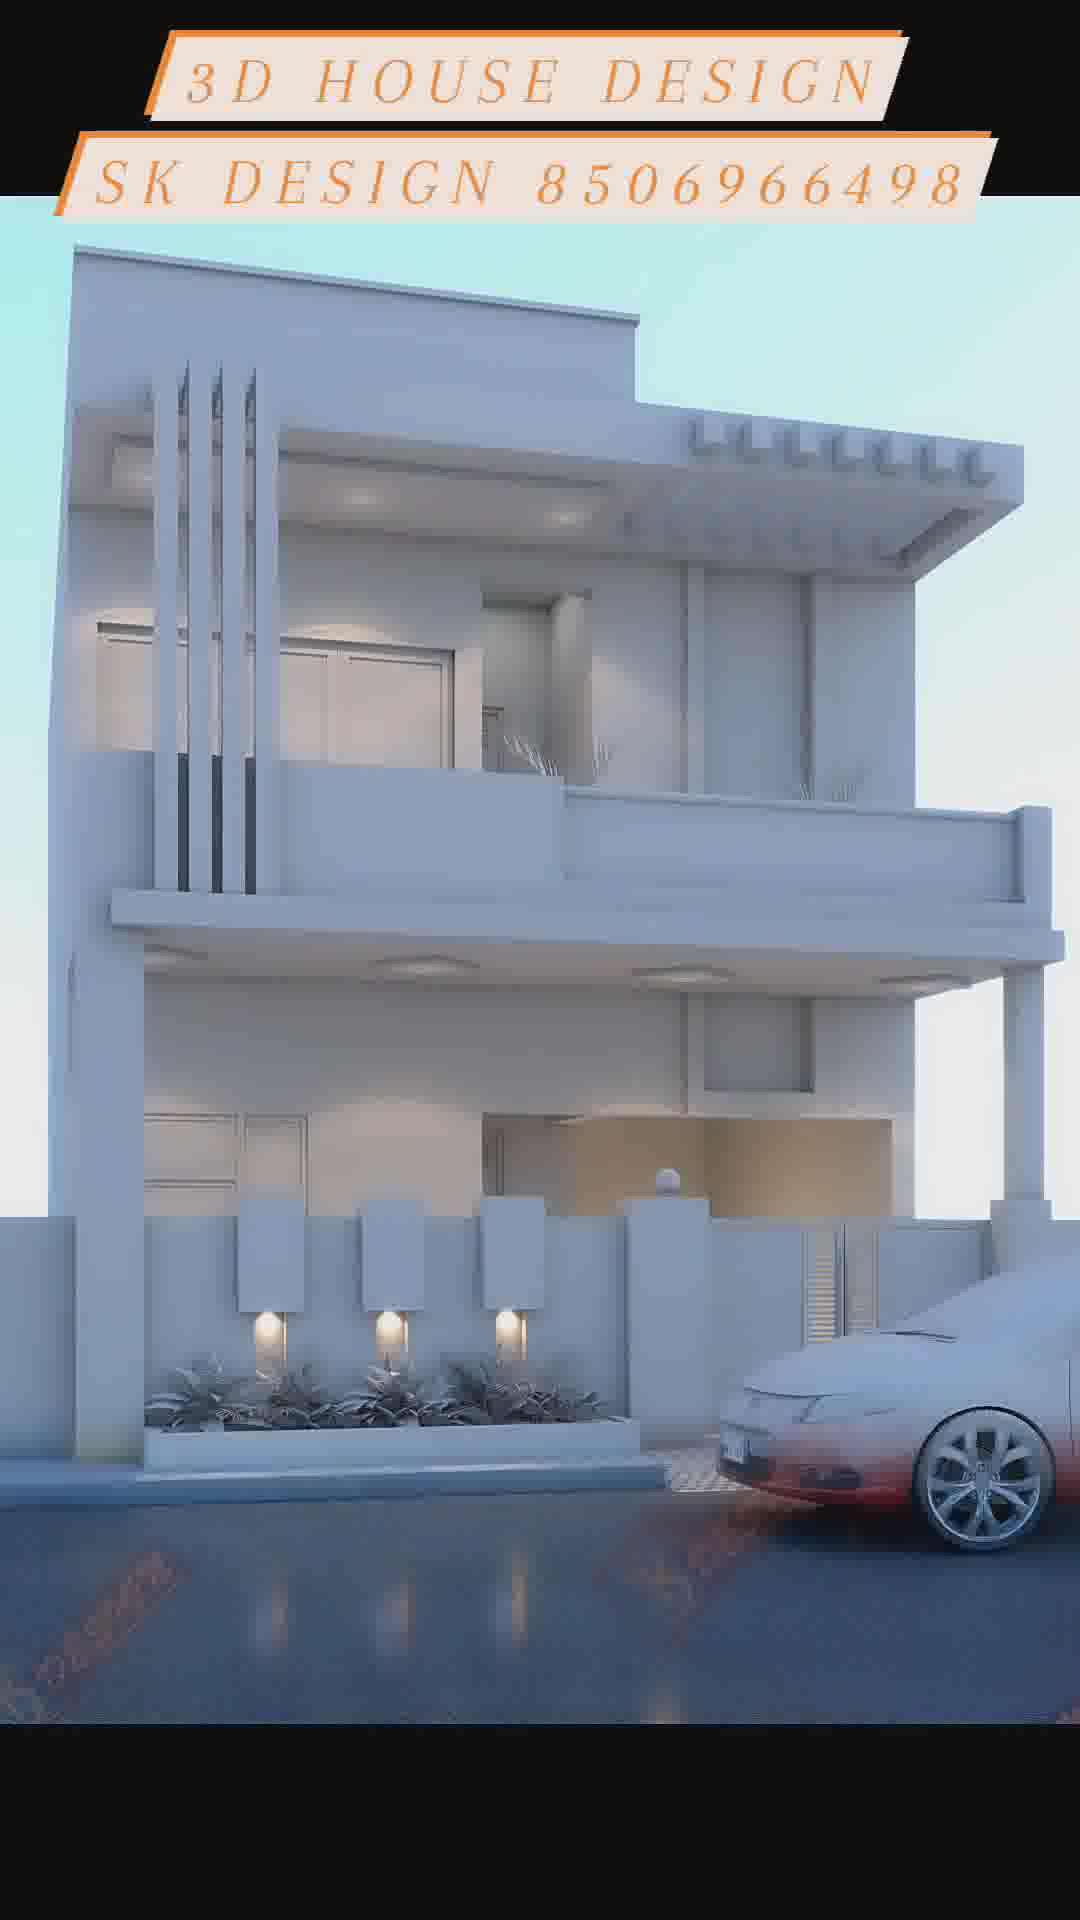 3d house design by me. 
 #Architect #architecturedesigns #Architectural&Interior #Architectural&nterior #3dhousedesigns #3dhousedesign #3Dhome #3dhomedesigns #3DHomepaint #3dhomeelevation #frontelivation #frontelevationdesign #HouseDesigns #HouseConstruction #3dfrontelevation #facadedesign #facad #facadelovers #facades #koloapp #koloviral #kolopost #kolopost #koło #viralkolo